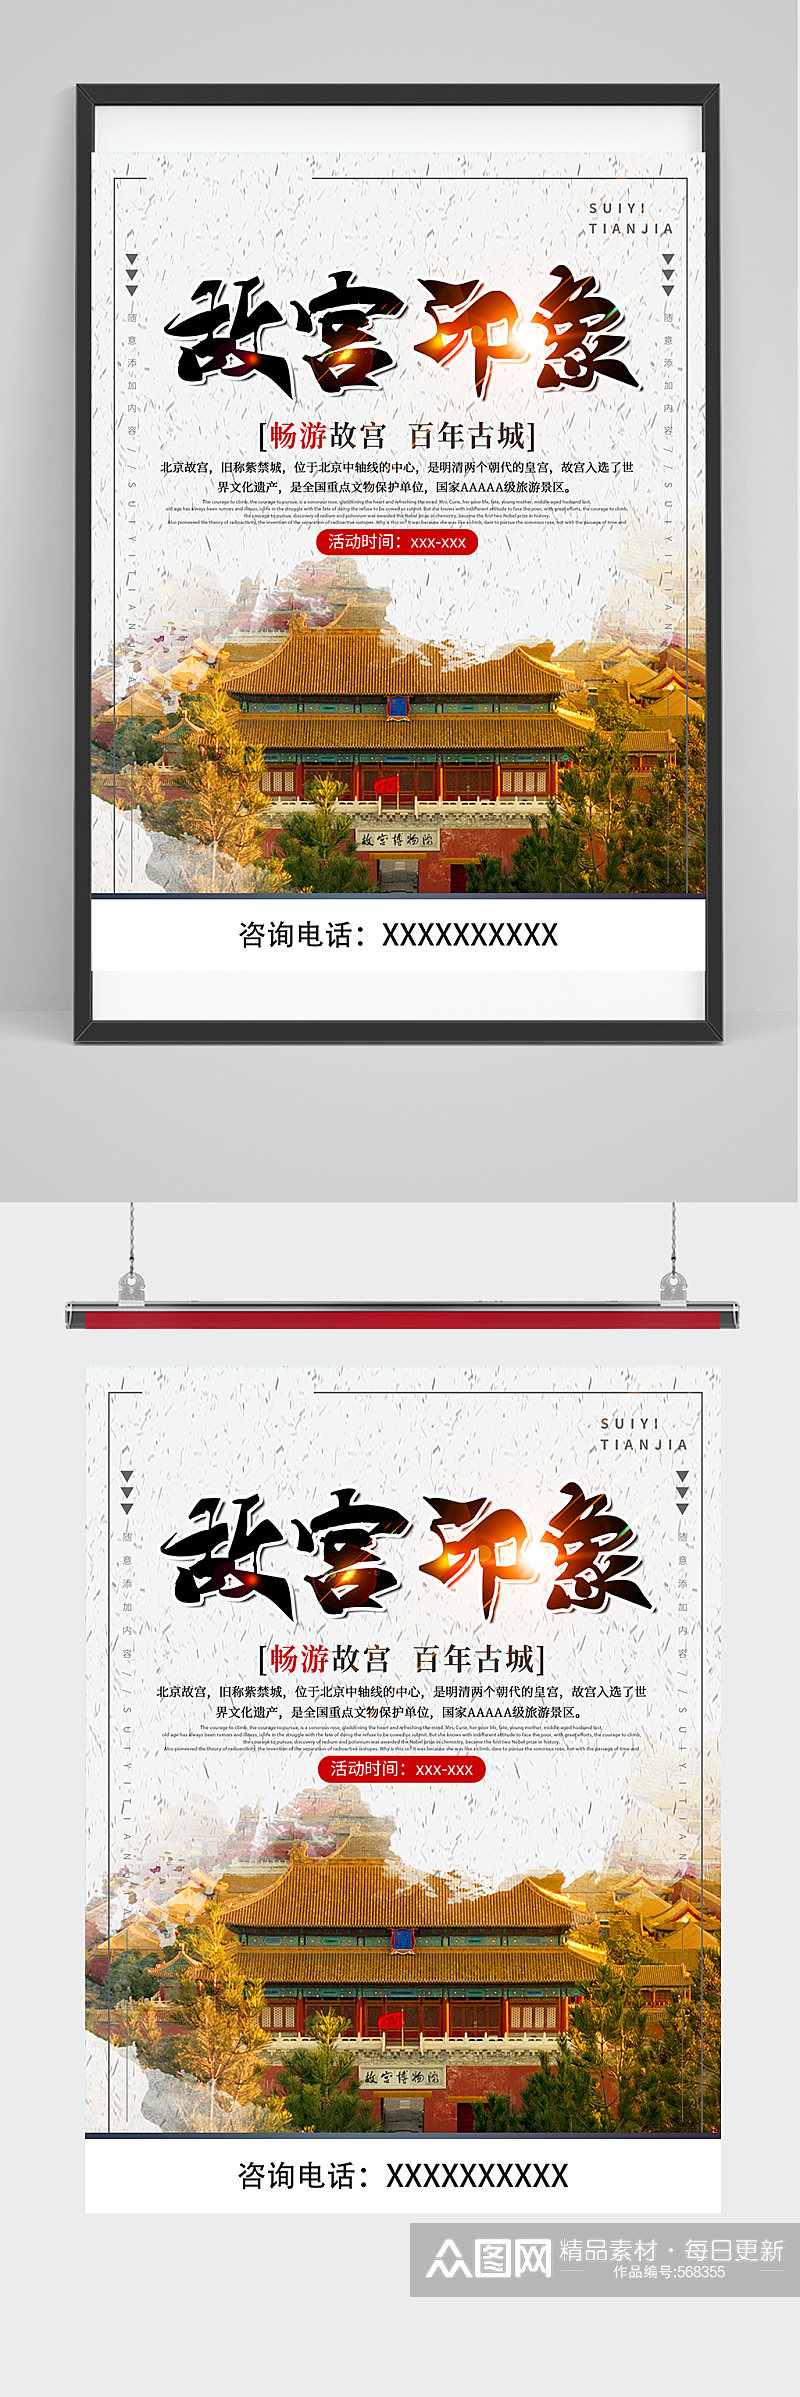 北京故宫印象海报素材